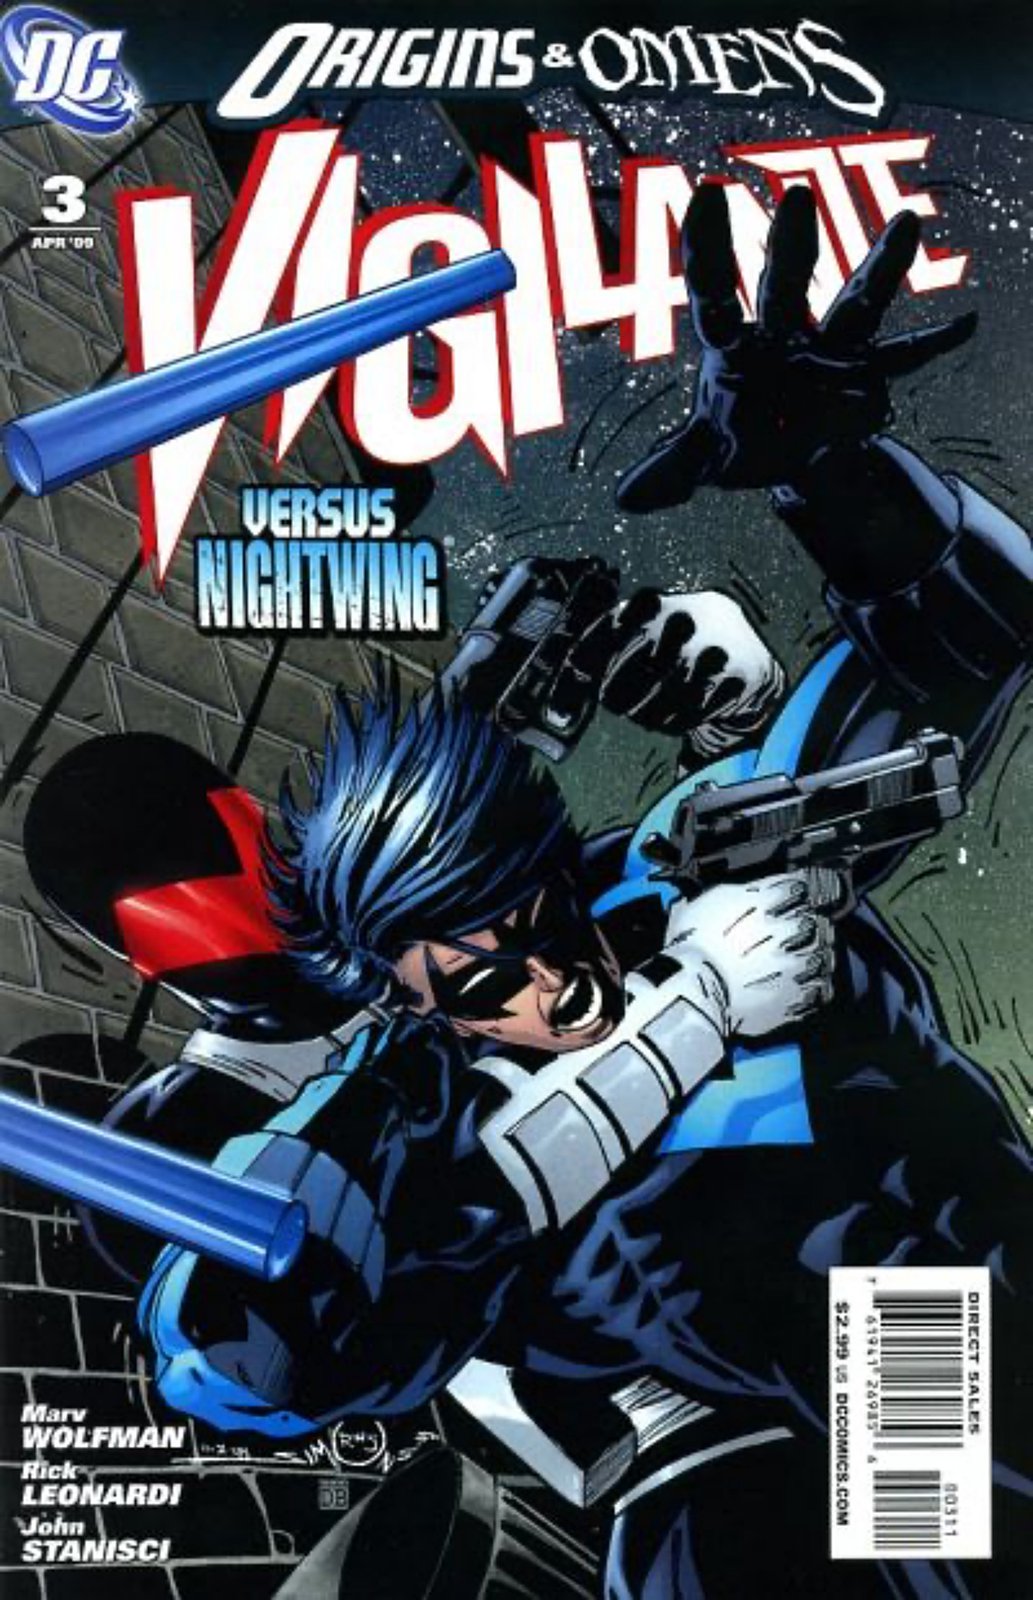 Vigilante #3 (2009-2010) DC Comics